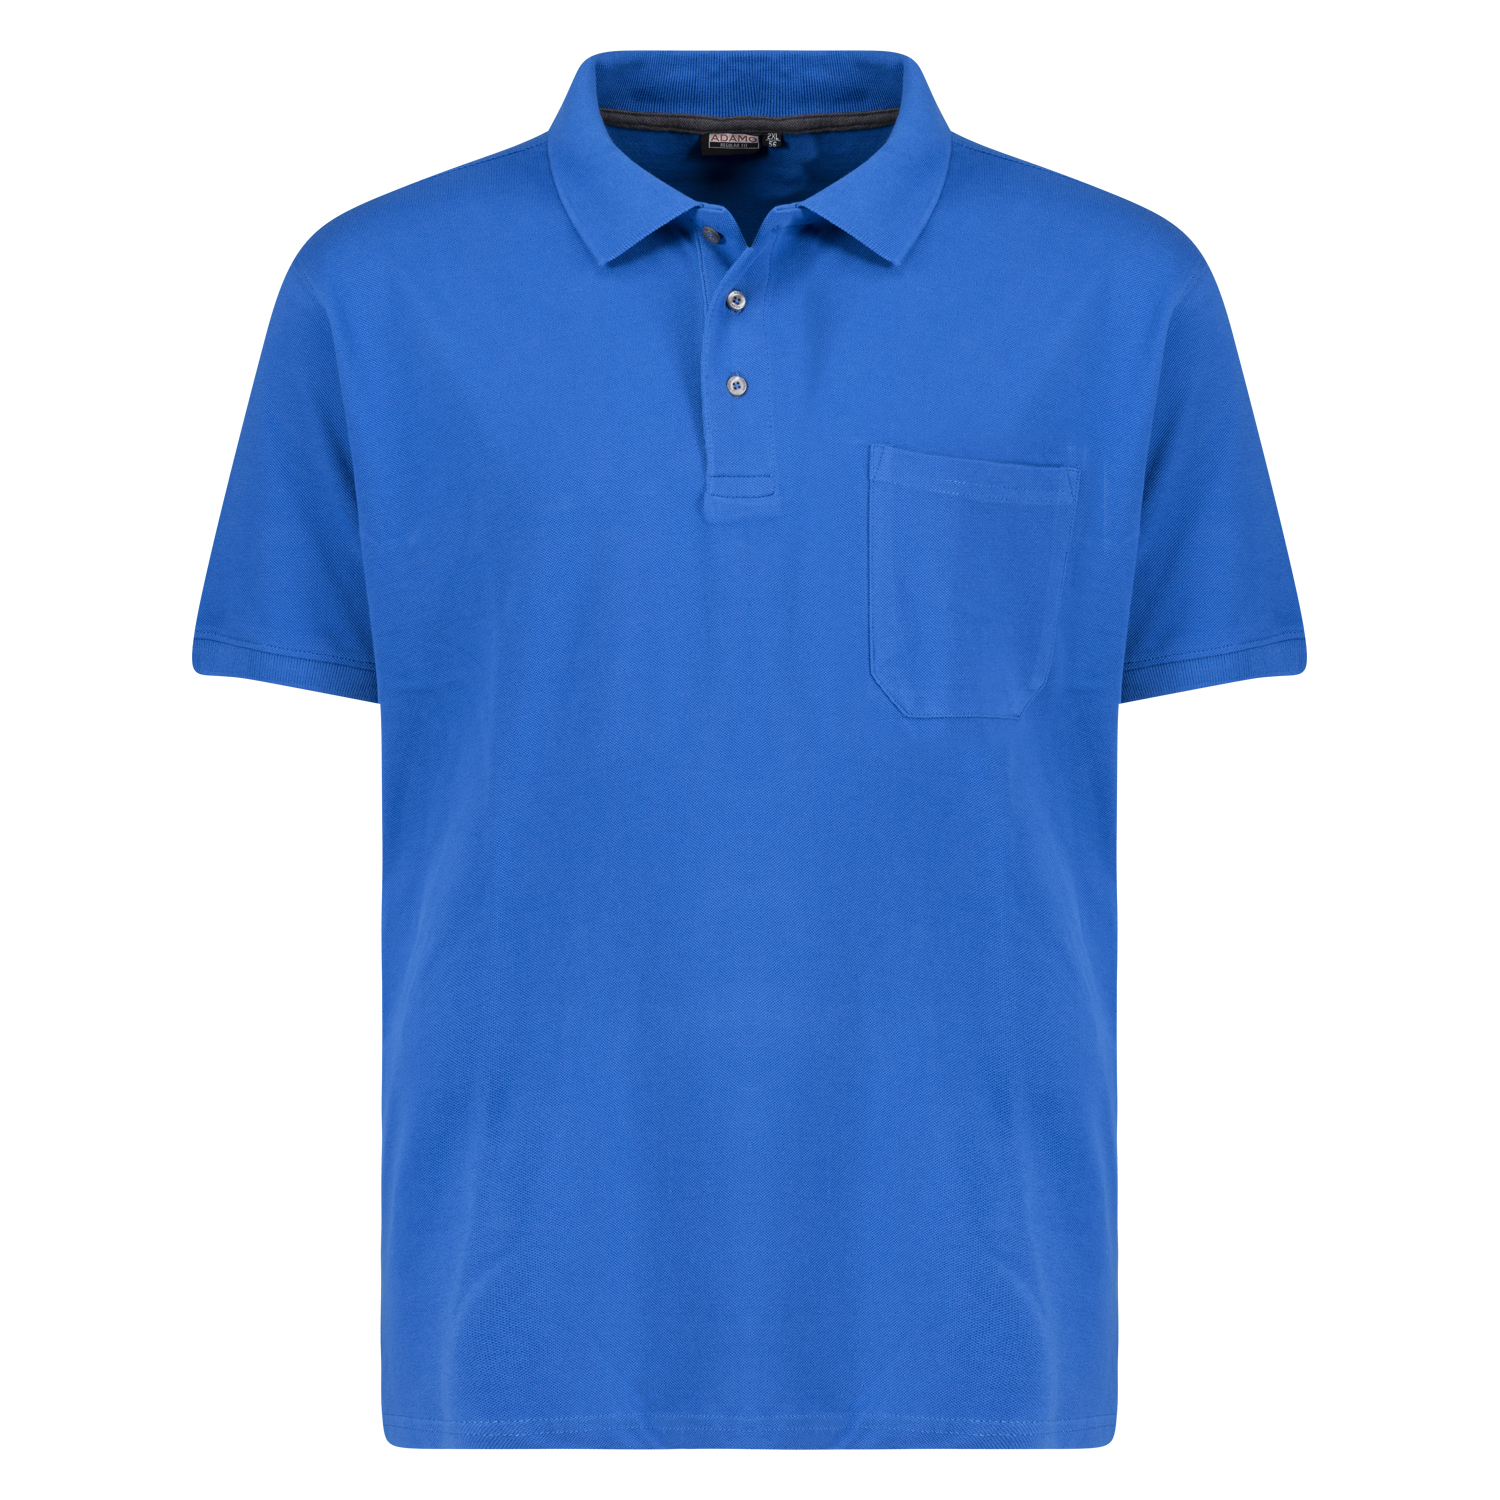 Polo shirt en azur à manches courtes série Klaas REGULAR FIT by ADAMO en grandes tailles jusqu'au 10XL